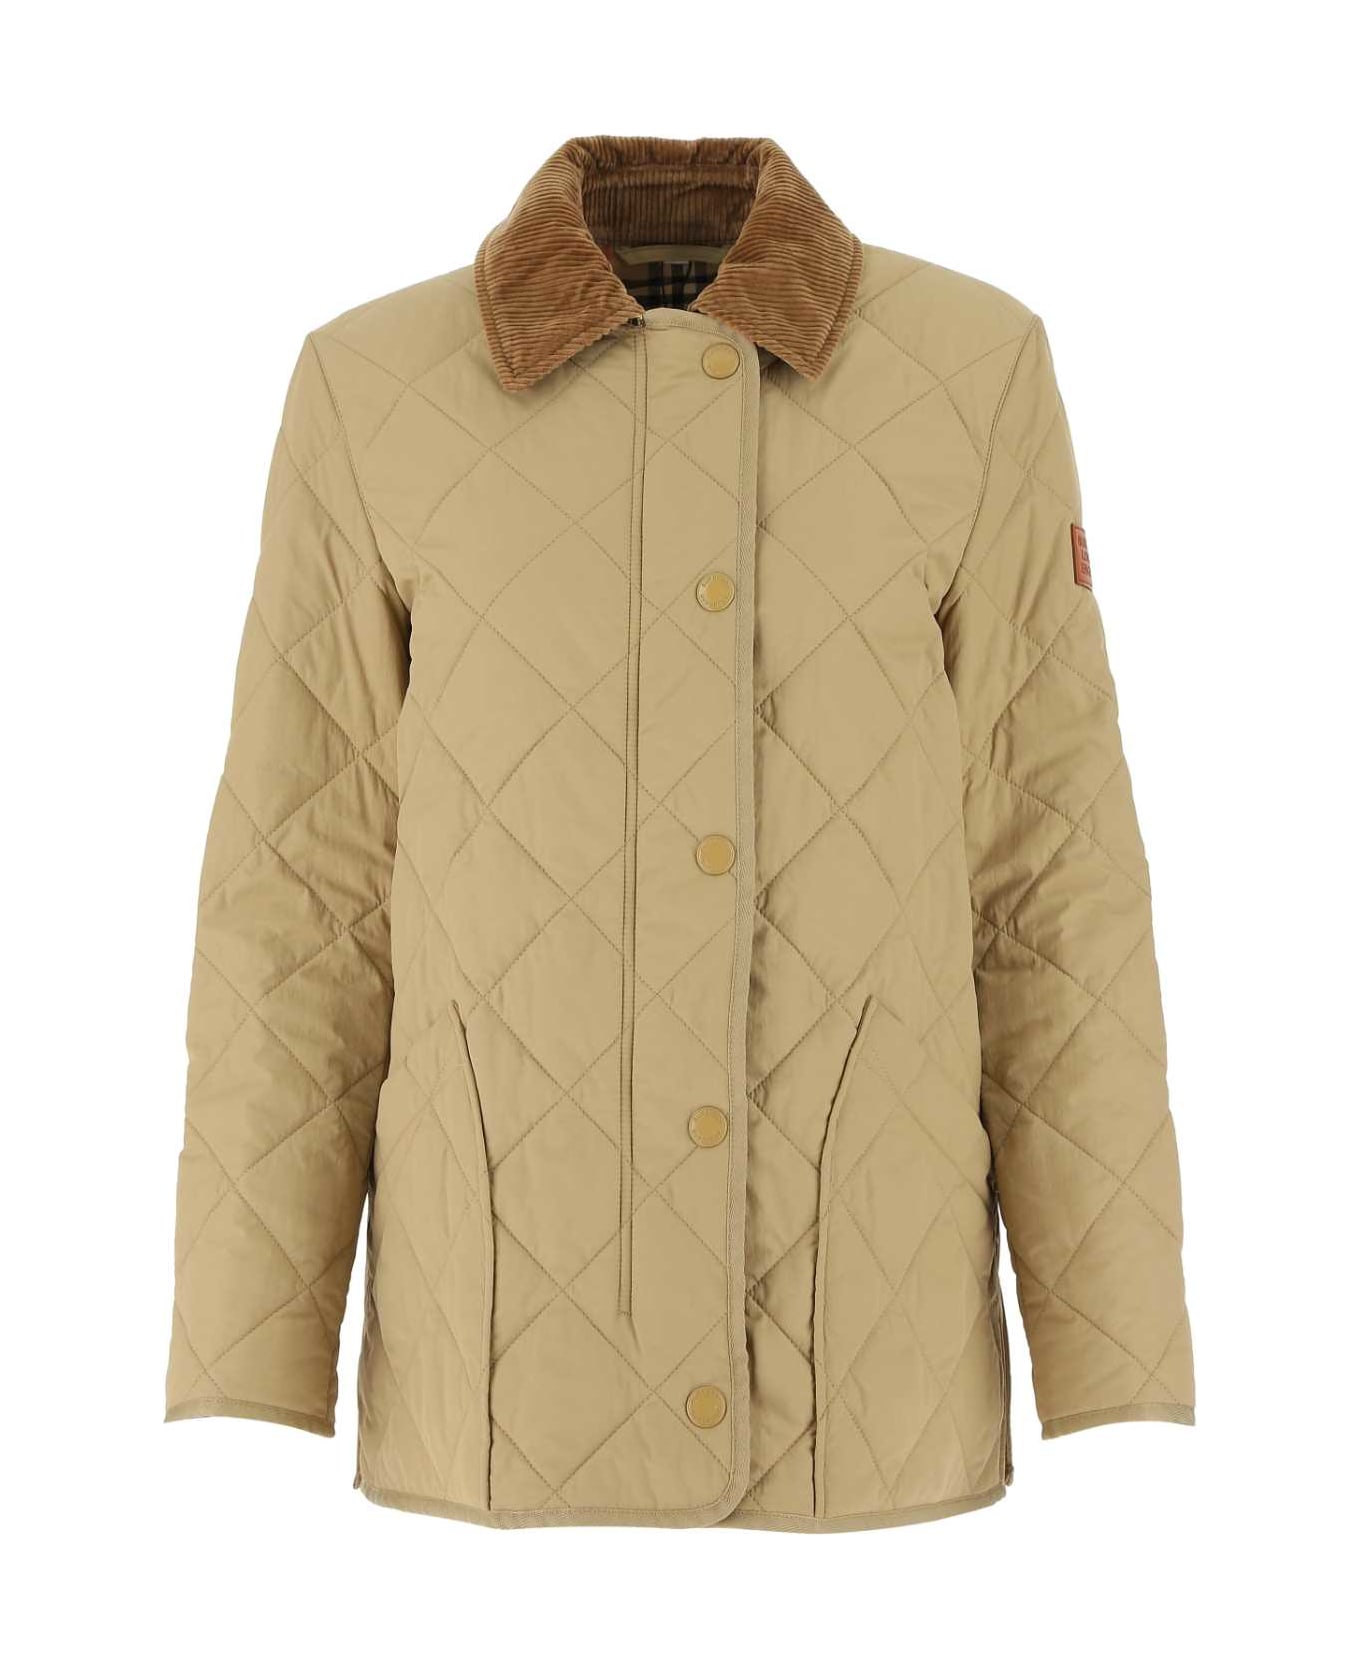 Burberry Beige Nylon Jacket - A1366